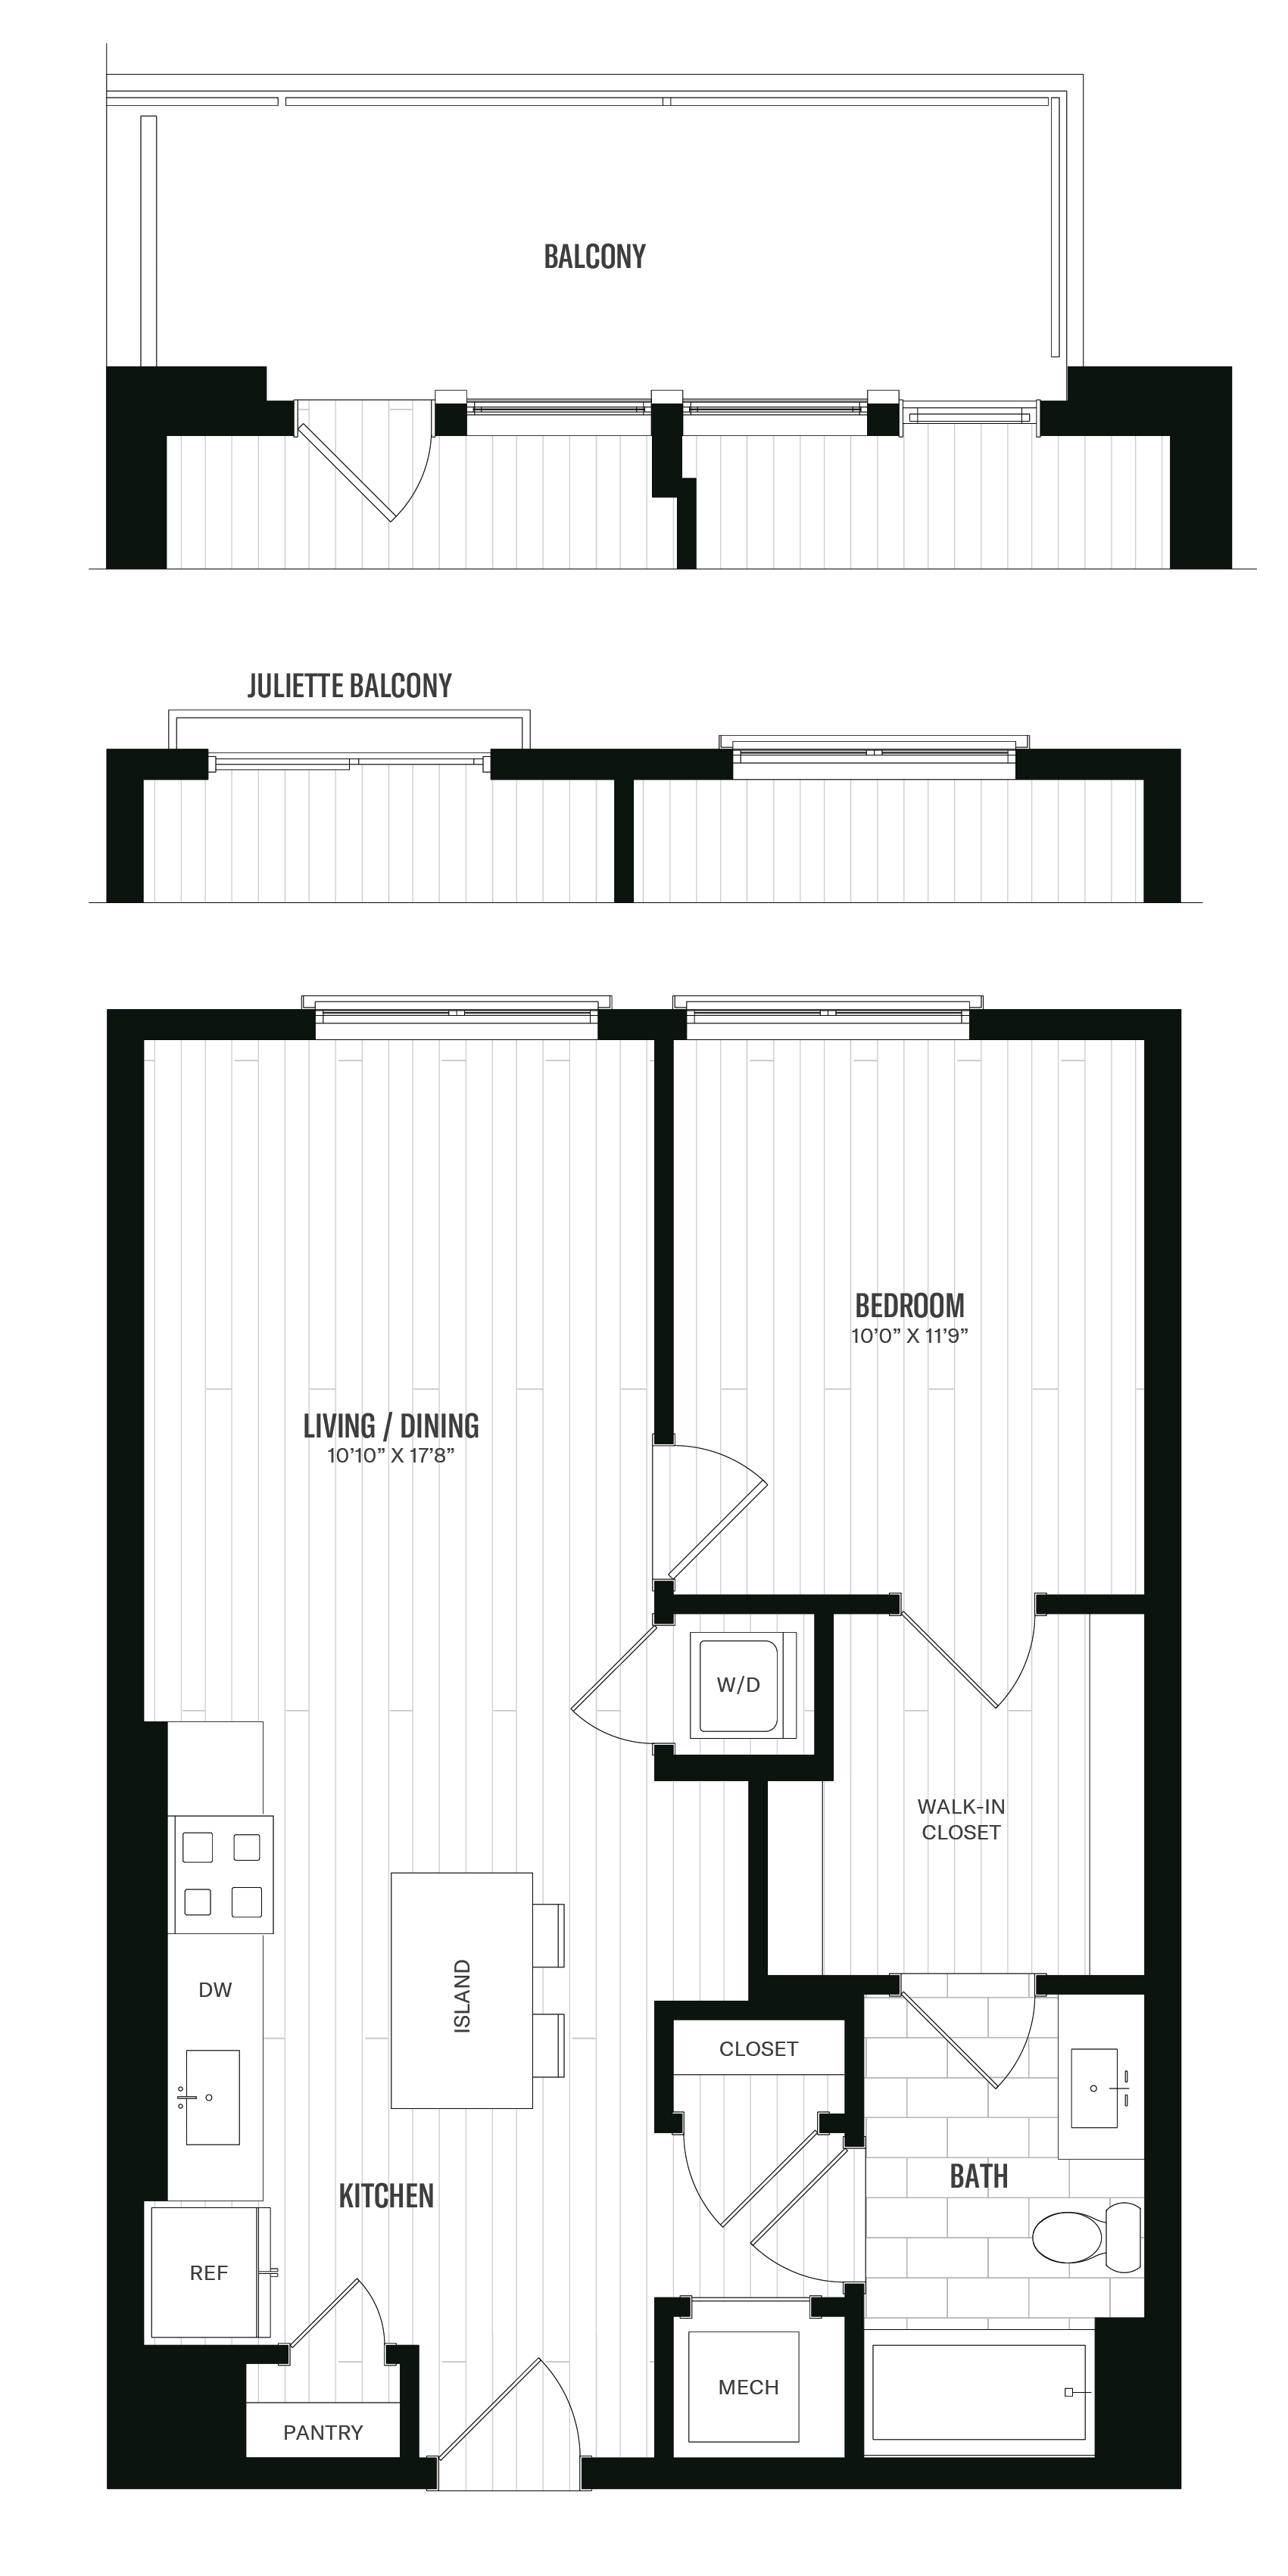 Floorplan image of unit 227